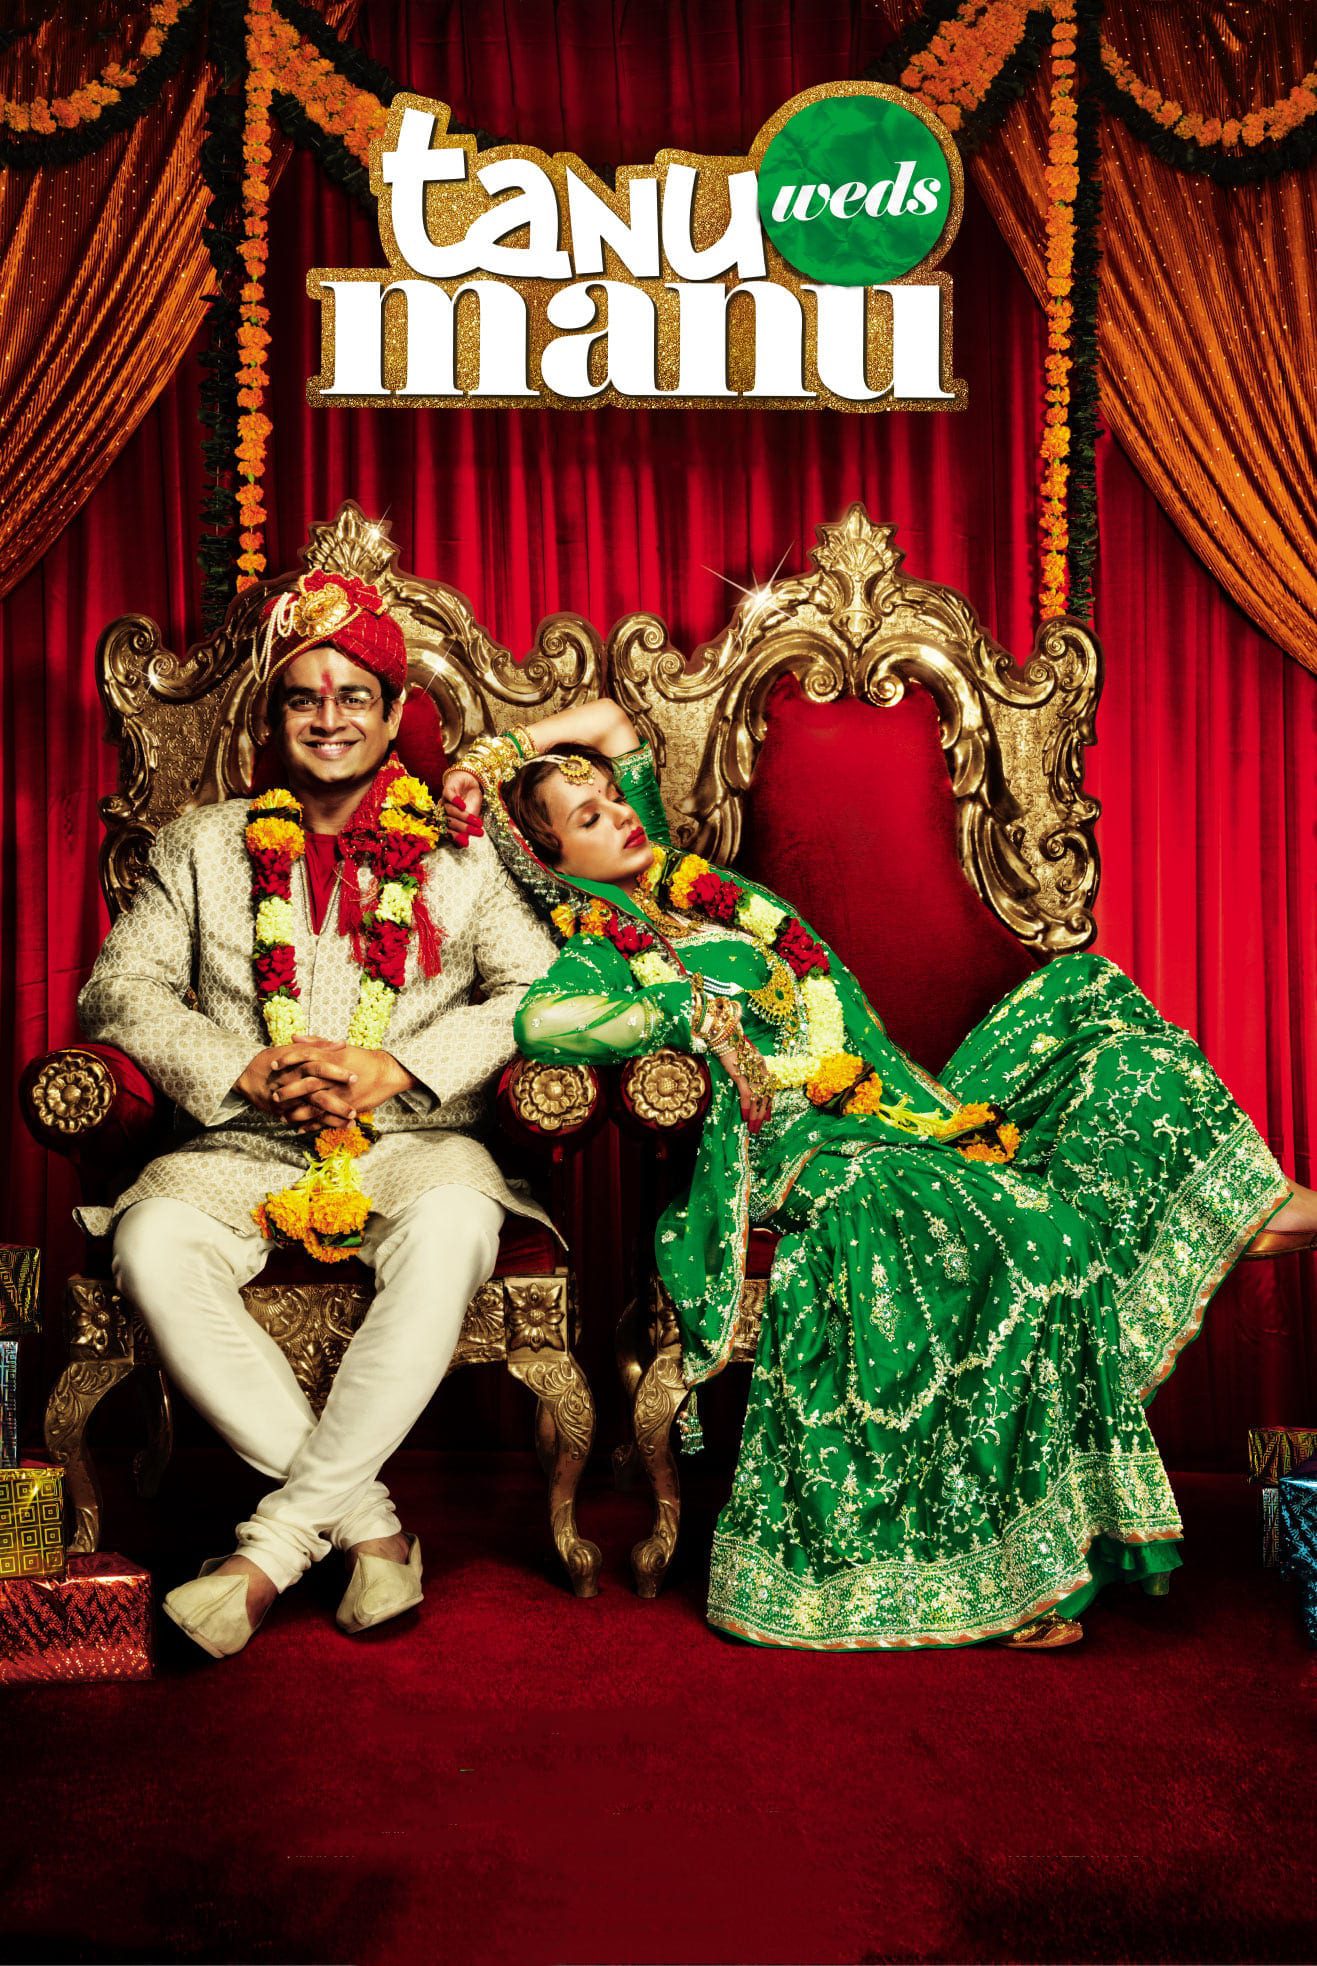 Poster for the movie "Tanu Weds Manu"